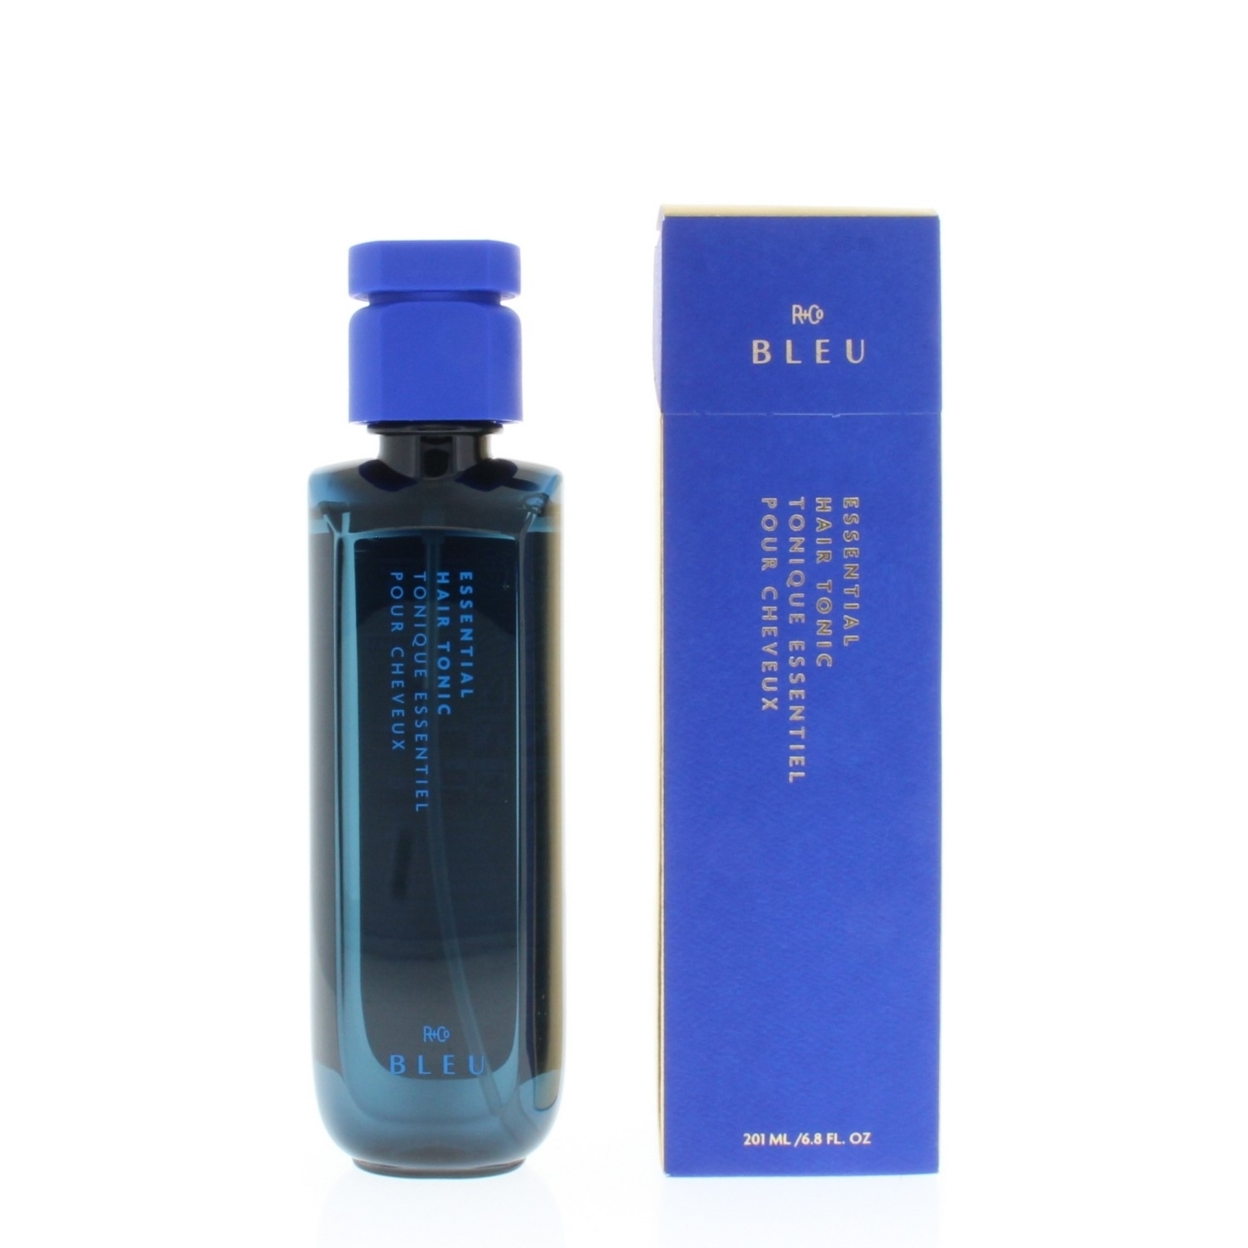 R+Co Bleu Essential Hair Tonic 6.8oz/201ml